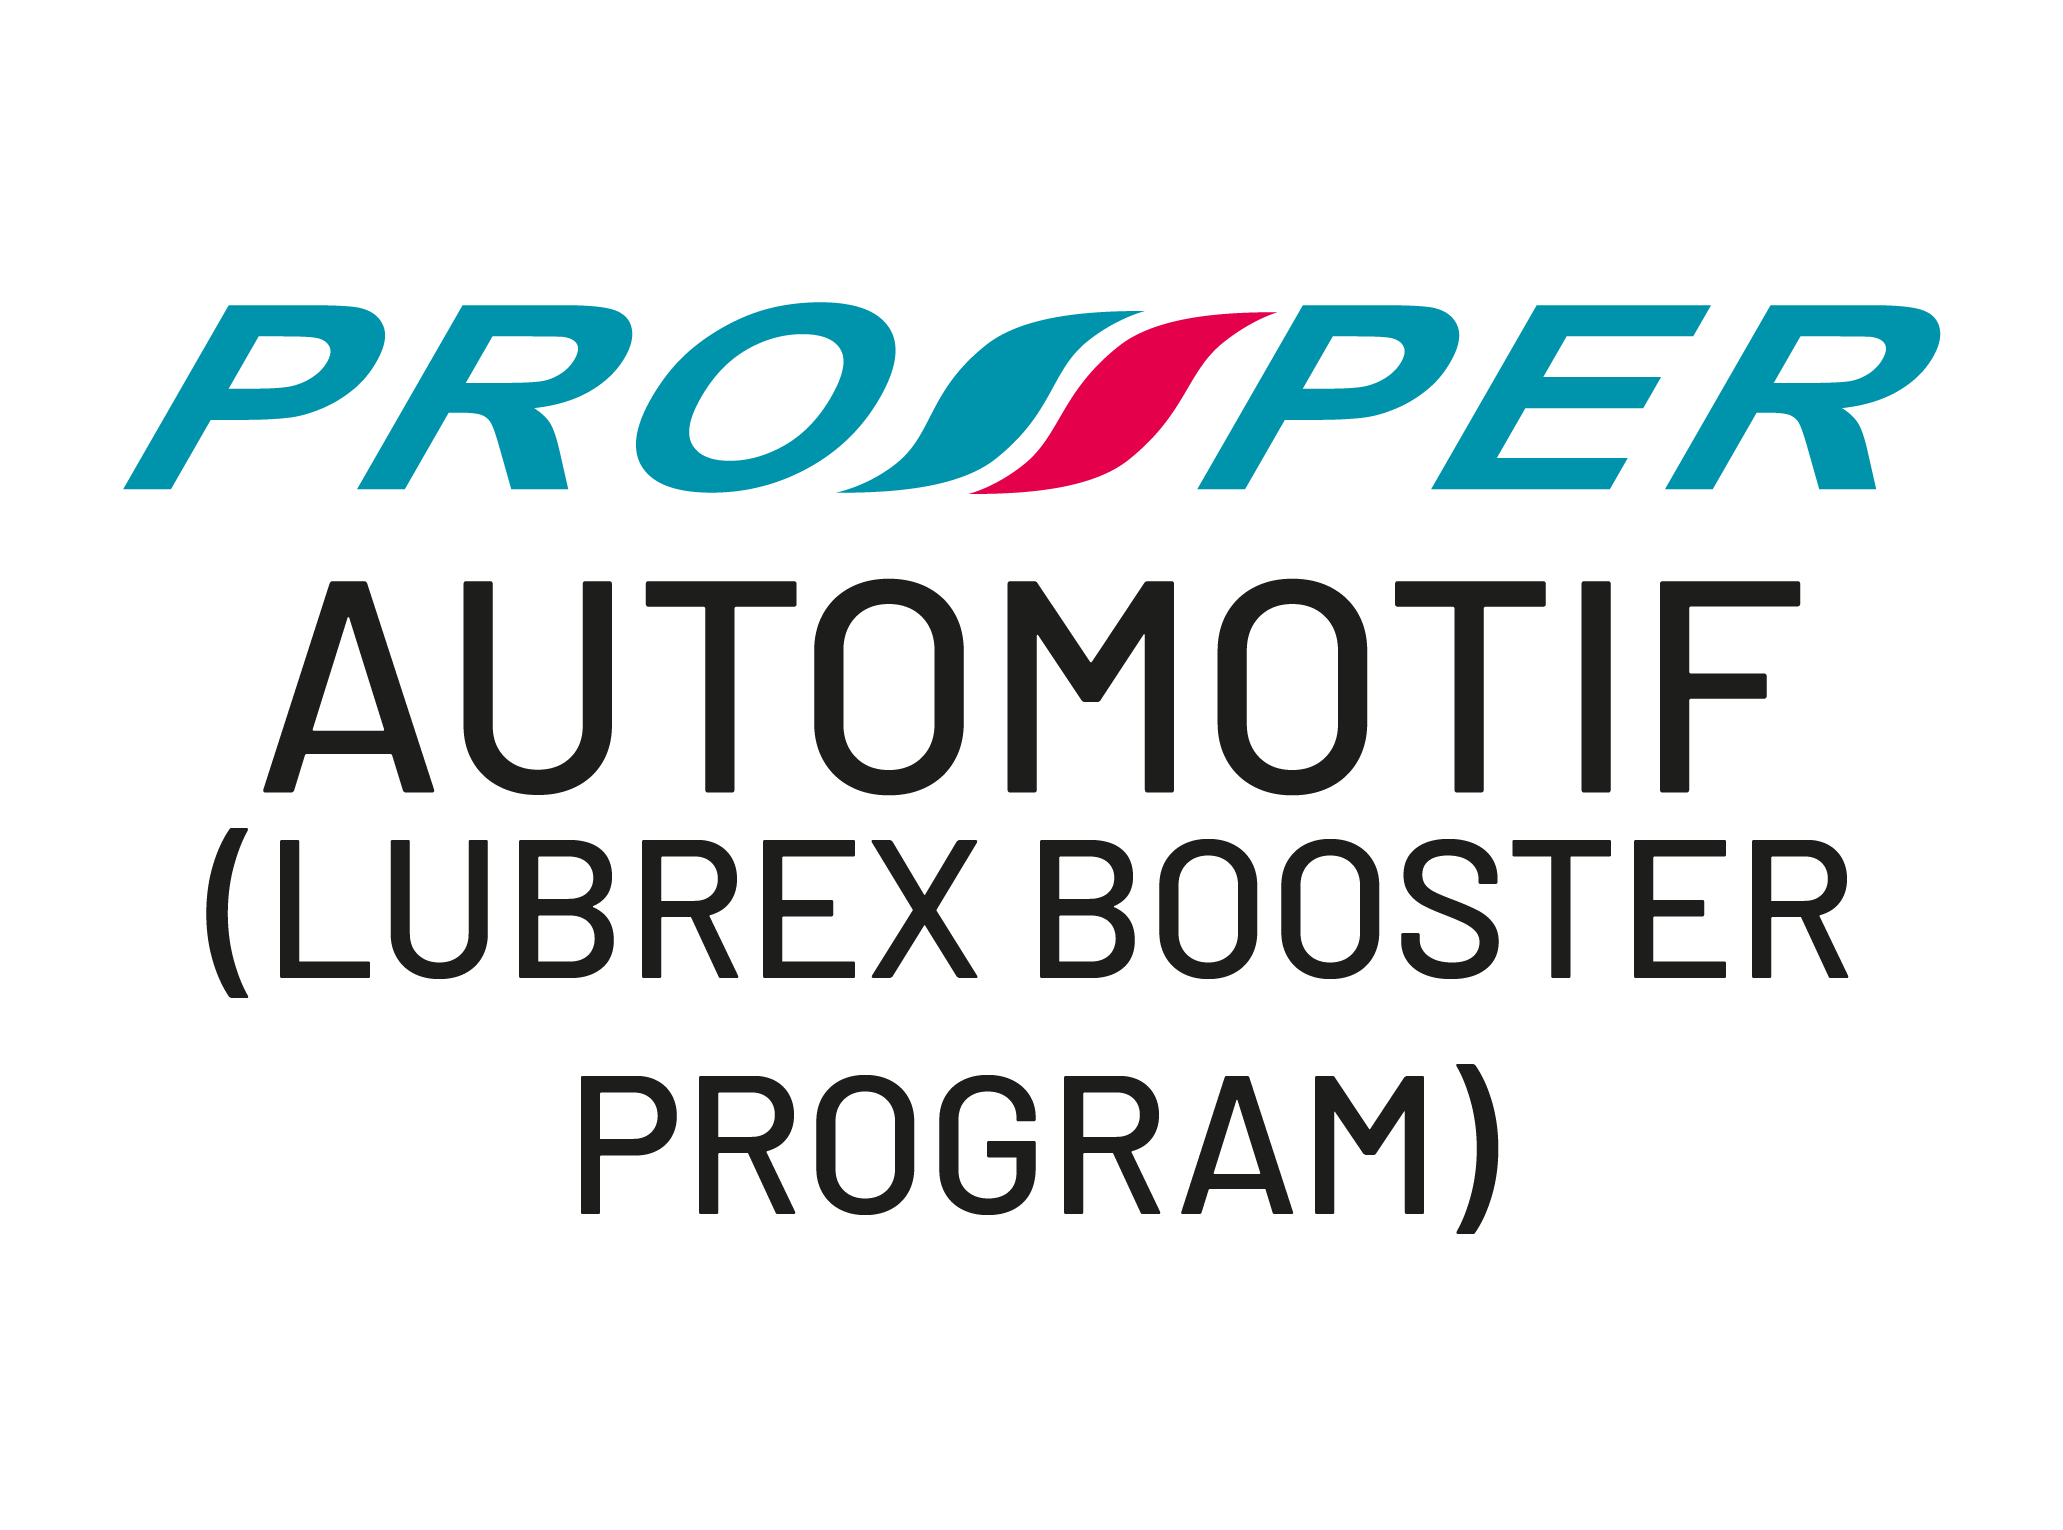 PROSPER Automotif - Lubrex Booster Program merupakan program kerjasama PUNB dengan Prowheels Distributor (M) Sdn Bhd (PDMSB) untuk mengembangkan perniagaan pengedar minyak Lubrex yang bernaung di bawah PDMSB. Melalui program ini PUNB akan menawarkan pembiayaan kepada usahawan yang telah dilantik oleh PDMSB sebagai pengedar minyak berjenama Lubrex. Pihak PDMSB pula menawarkan khidmat pemantauan imej korporat premis dan perniagaan, latihan dan khidmat nasihat keusahawanan.